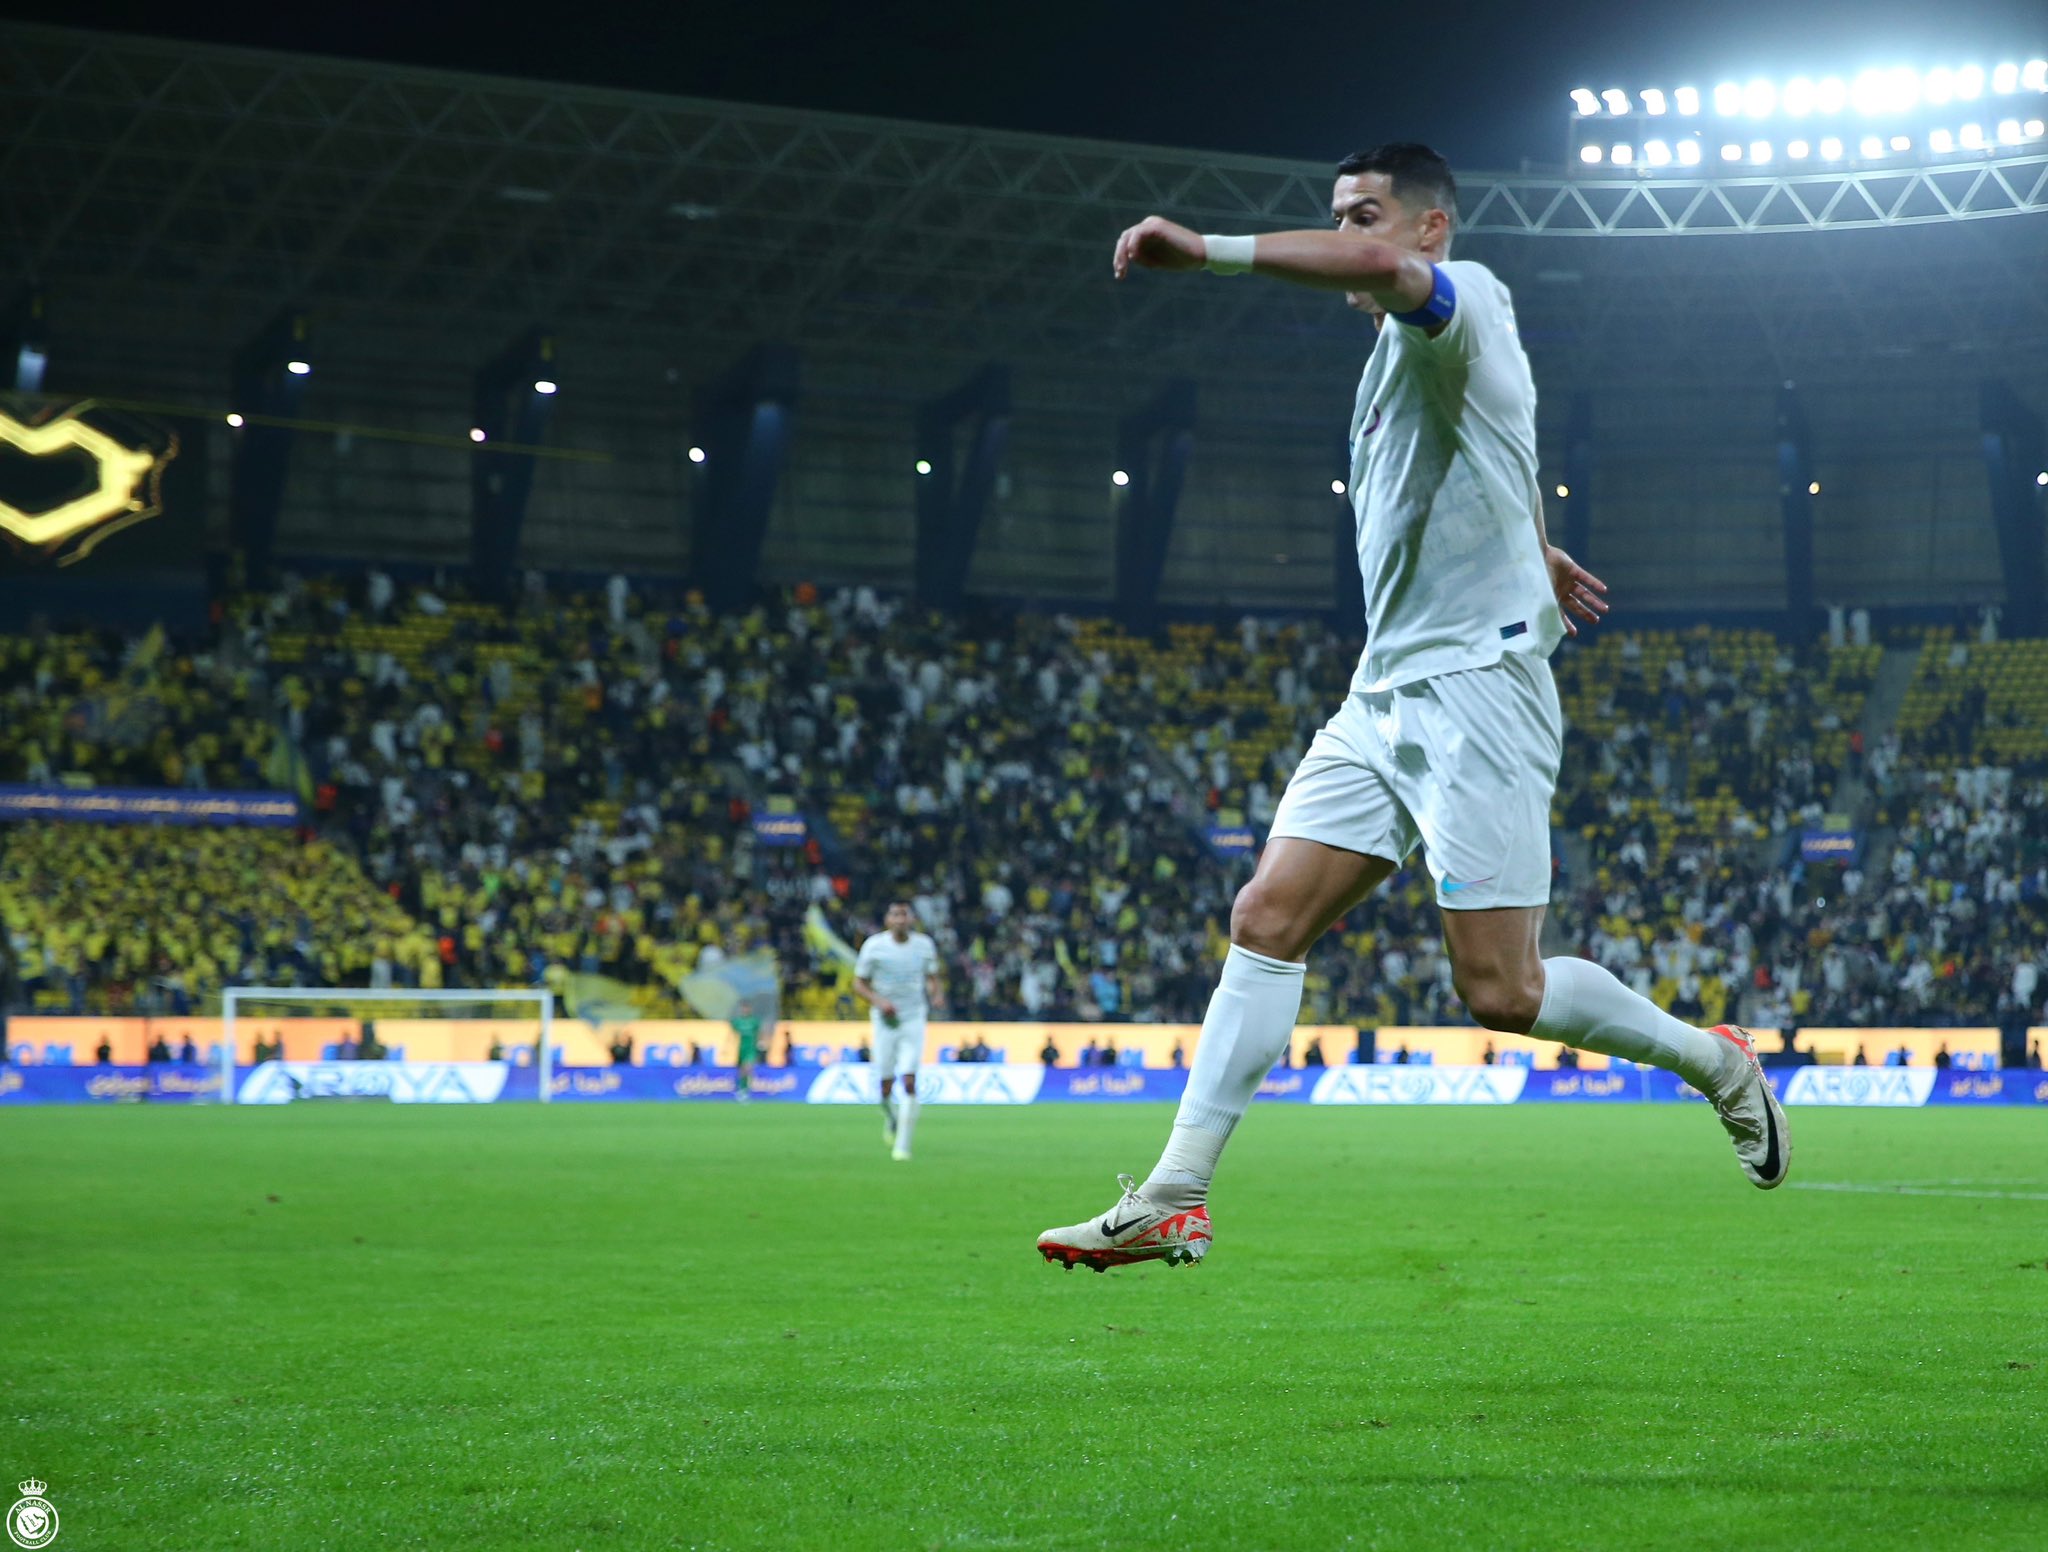 پیروزی 4-1 النصر در شب گلزنی و رکوردشکنی کاپیتان رونالدو